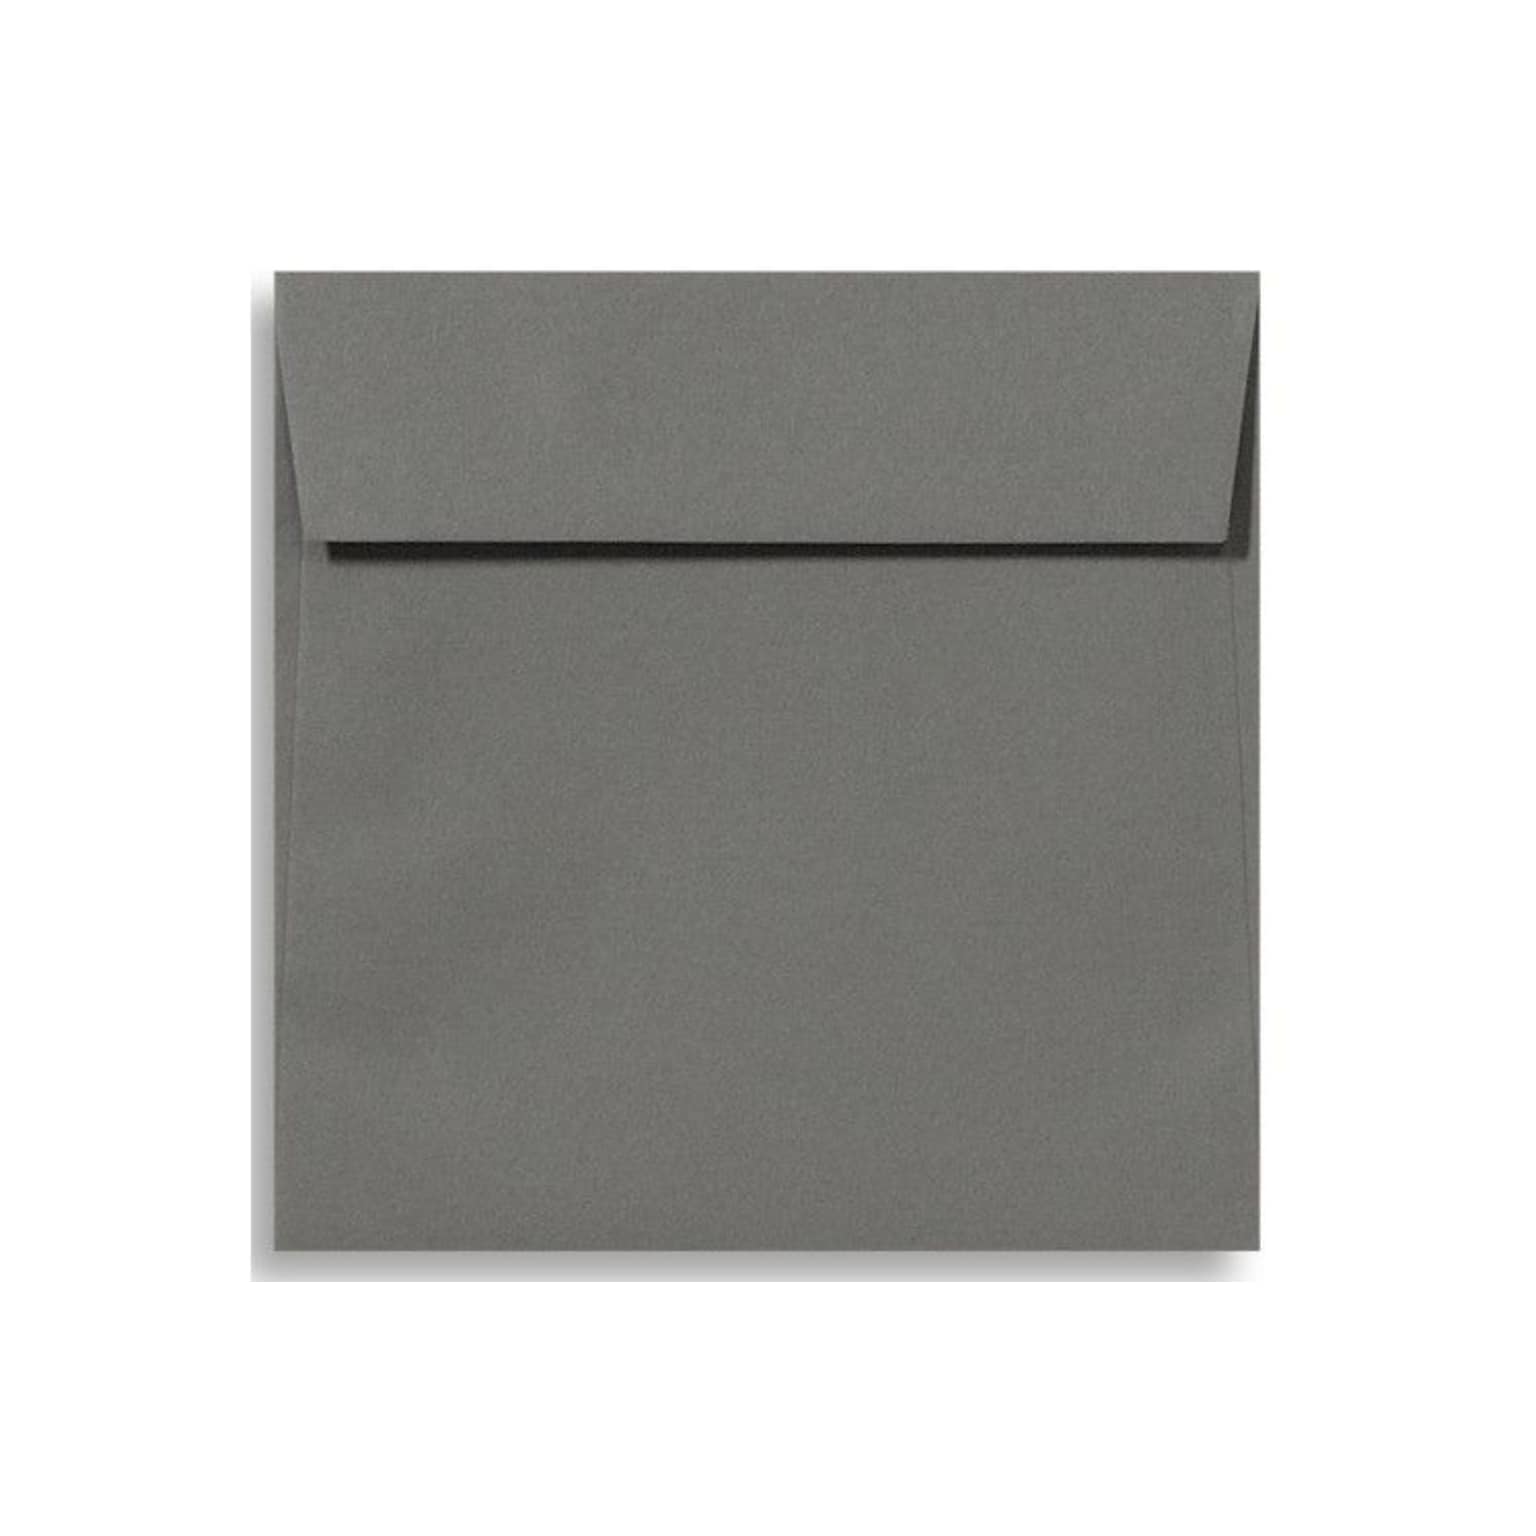 LUX® 70lb 5 1/2x5 1/2 Square Flap Envelopes W/Peel&Press; Smoke Gray, 1000/BX